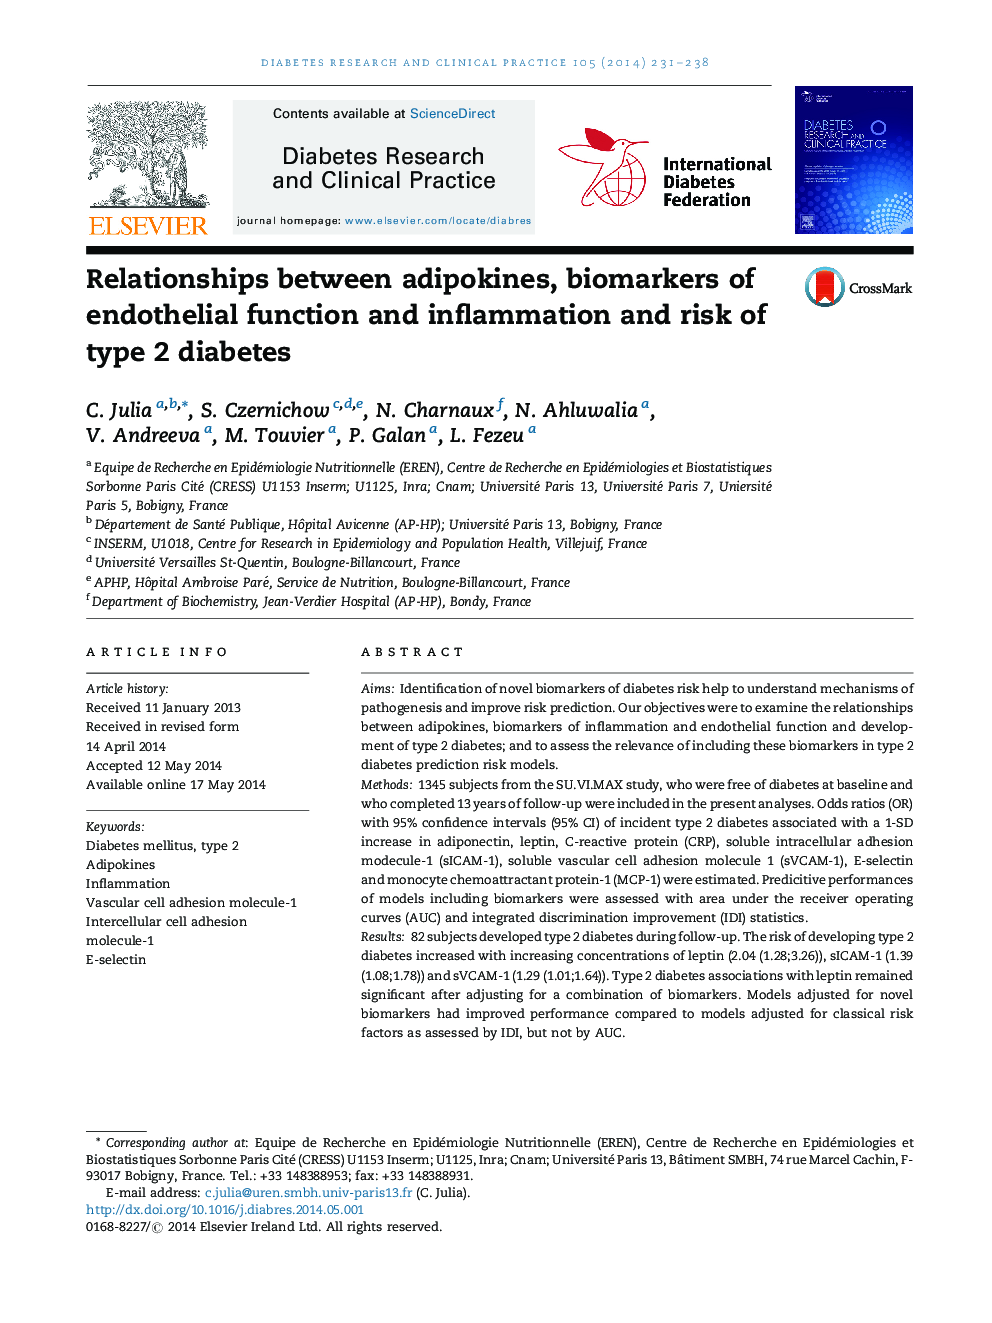 ارتباط بین آدیپوکین ها، بیومارکرهای عملکرد اندوتلیال و التهاب و خطر دیابت نوع 2 